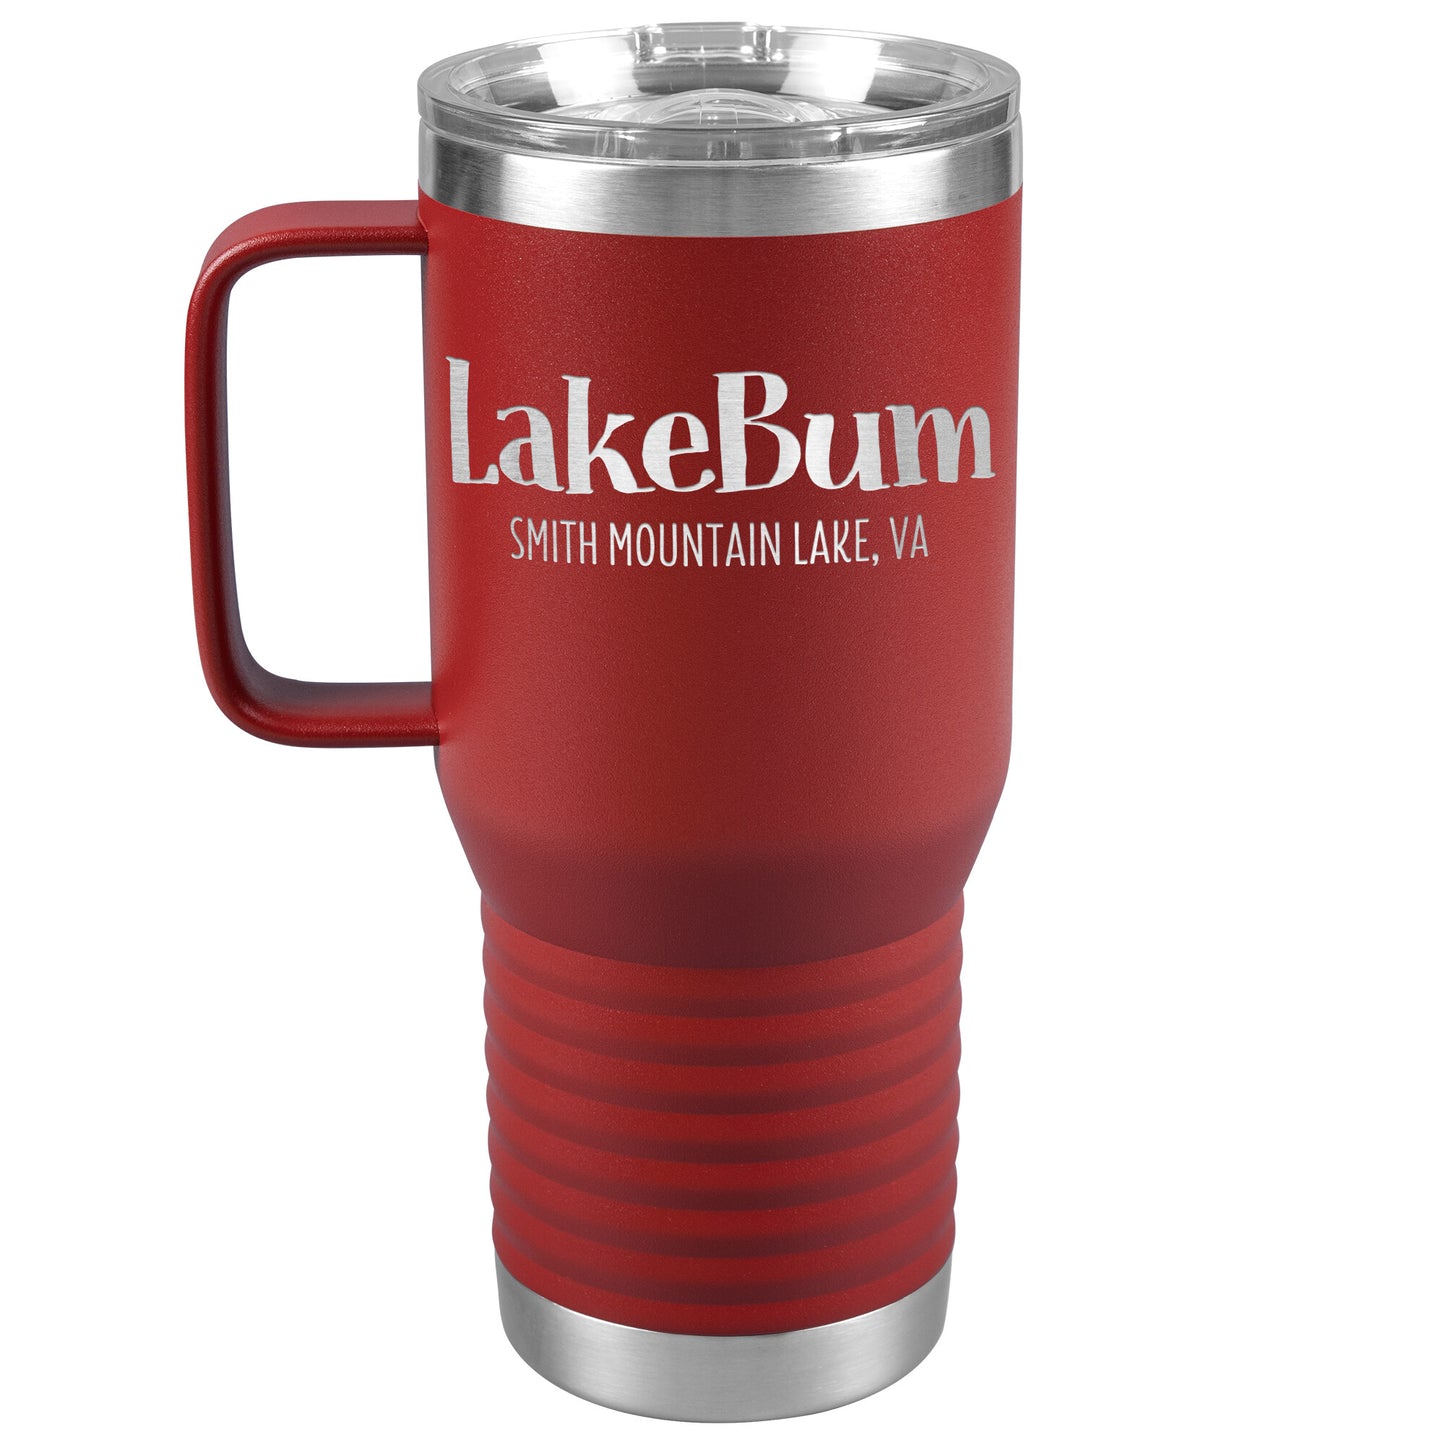 Lake Bum Smith Mountain Lake - Laser Etched Drink Tumbler